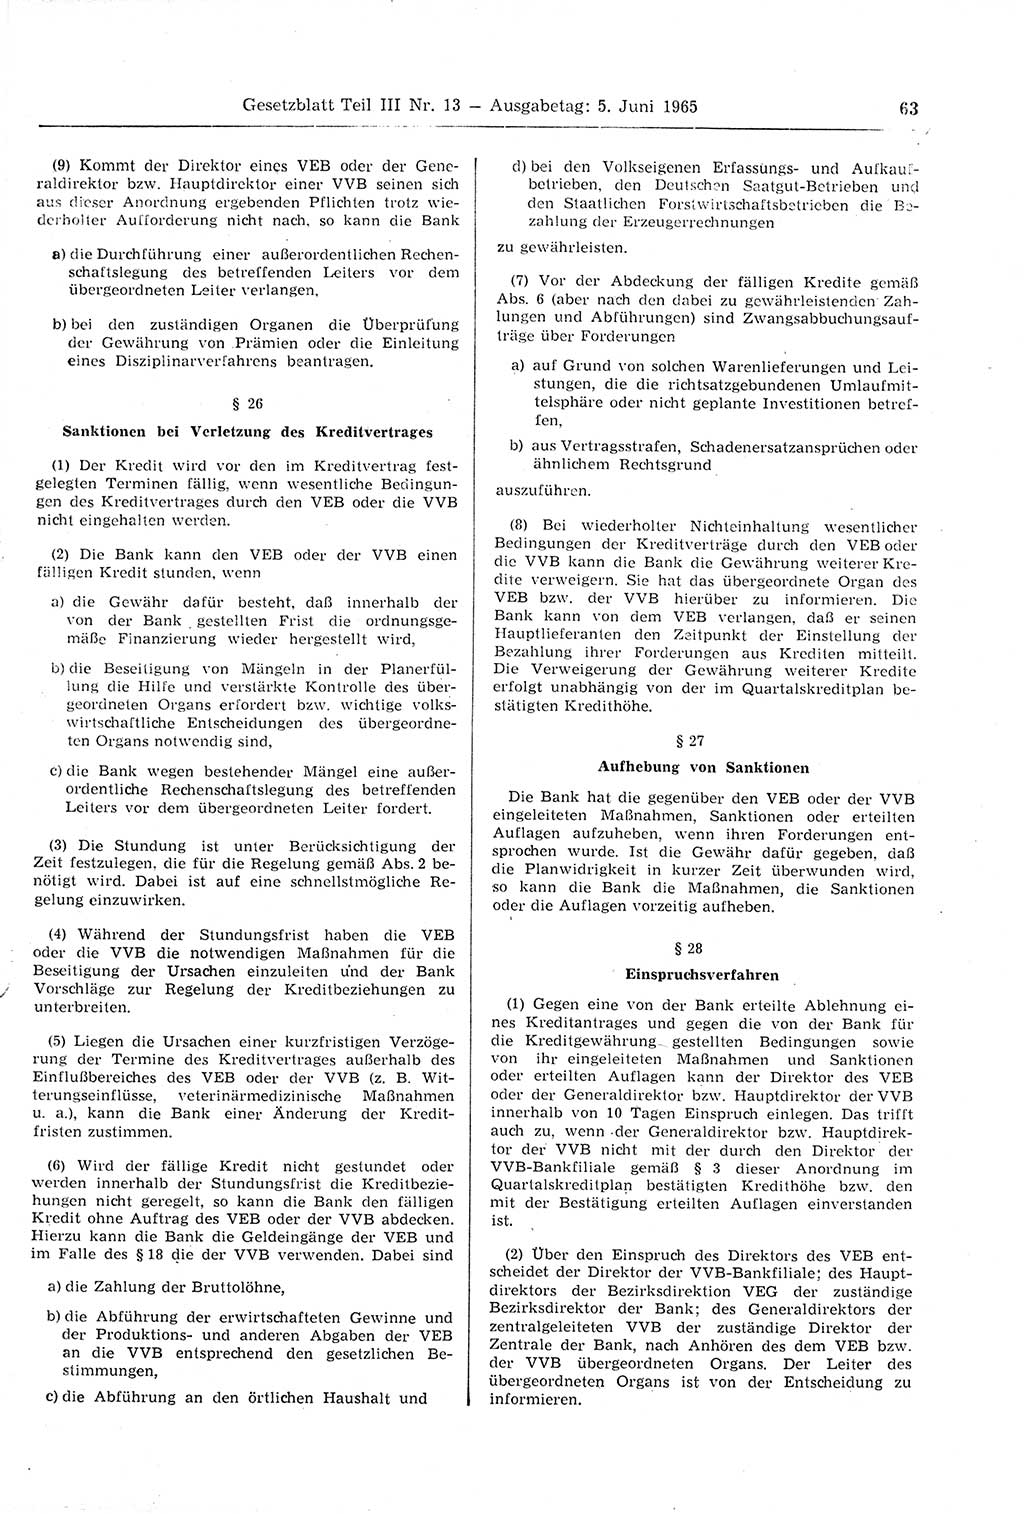 Gesetzblatt (GBl.) der Deutschen Demokratischen Republik (DDR) Teil ⅠⅠⅠ 1965, Seite 63 (GBl. DDR ⅠⅠⅠ 1965, S. 63)